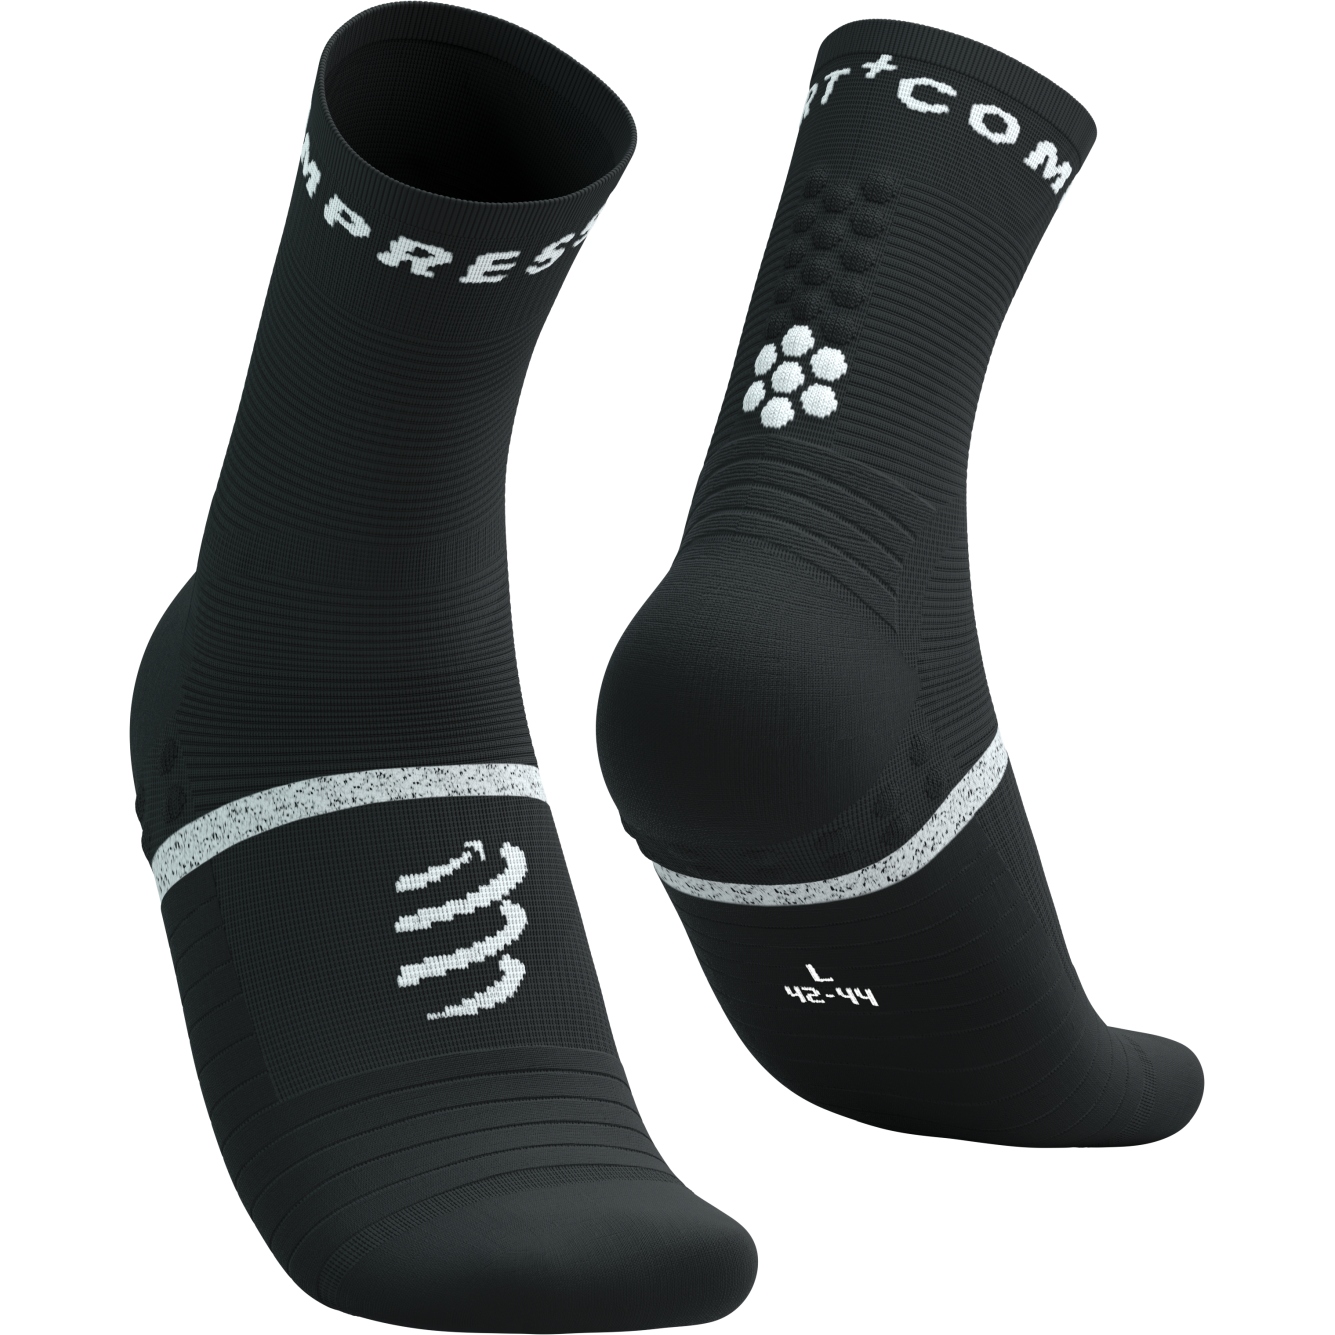 Productfoto van Compressport Pro Marathon Sokken v2.0 - zwart/wit